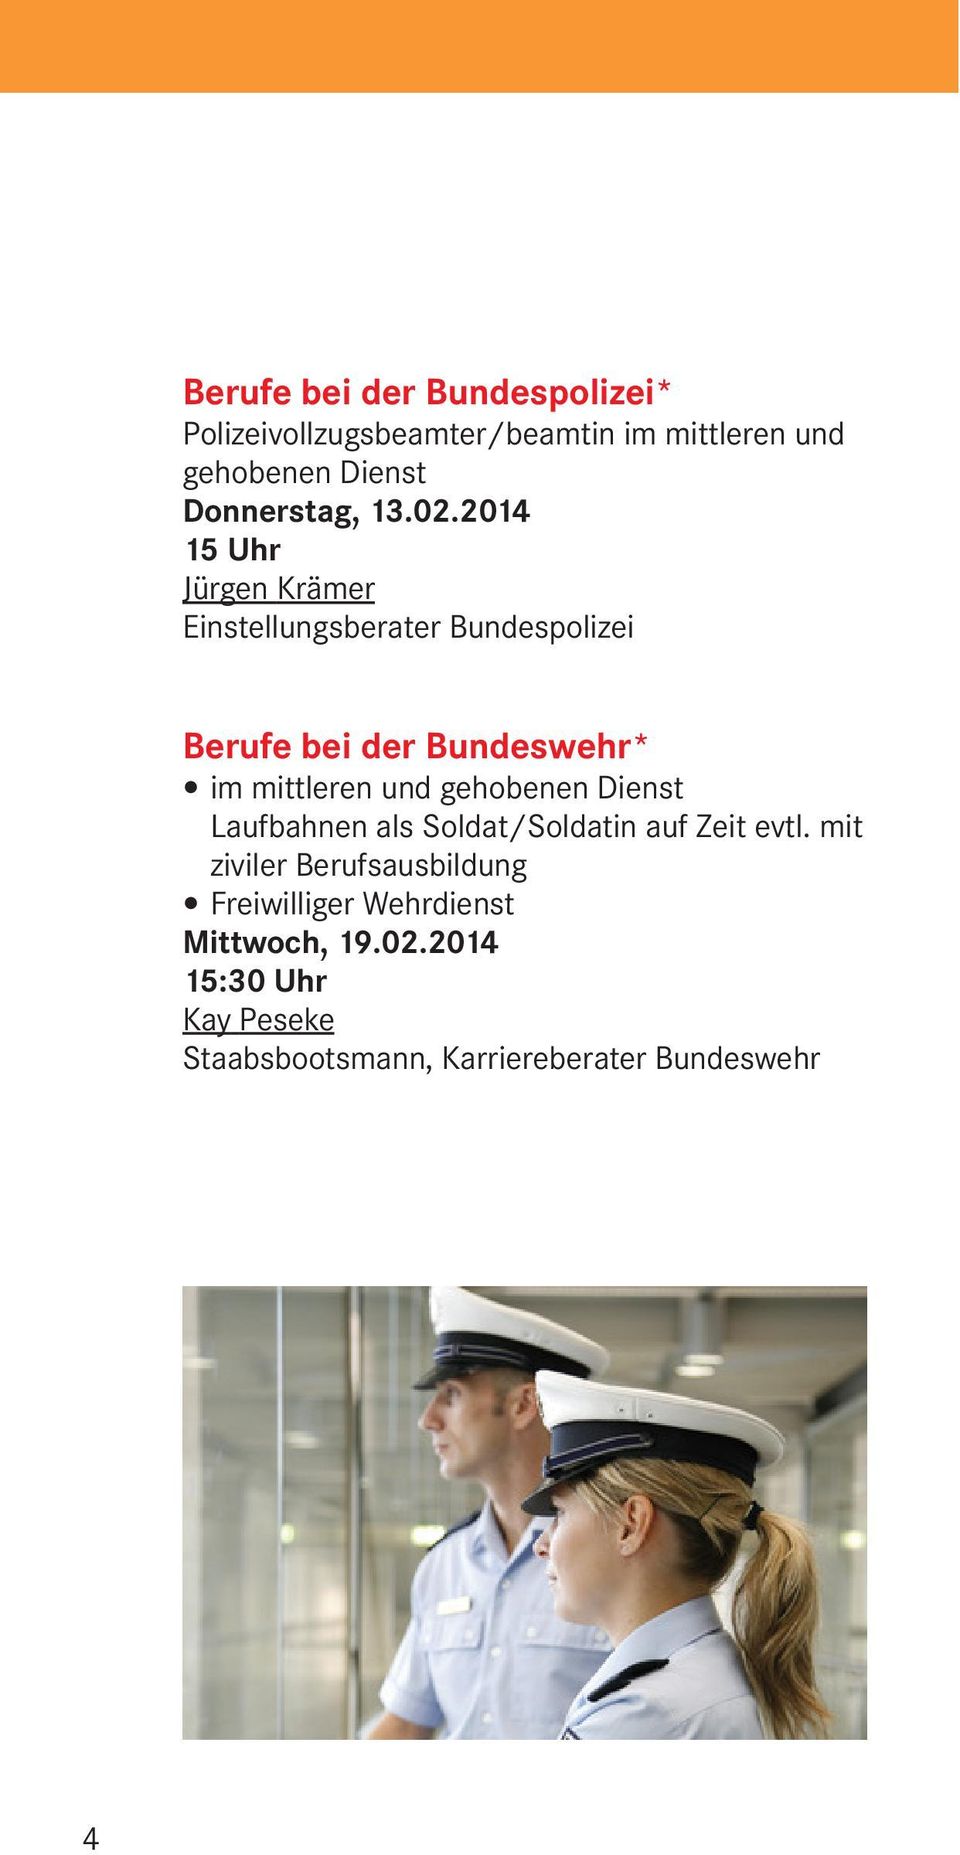 2014 15 Uhr Jürgen Krämer Einstellungsberater Bundespolizei Berufe bei der Bundeswehr* im mittleren und